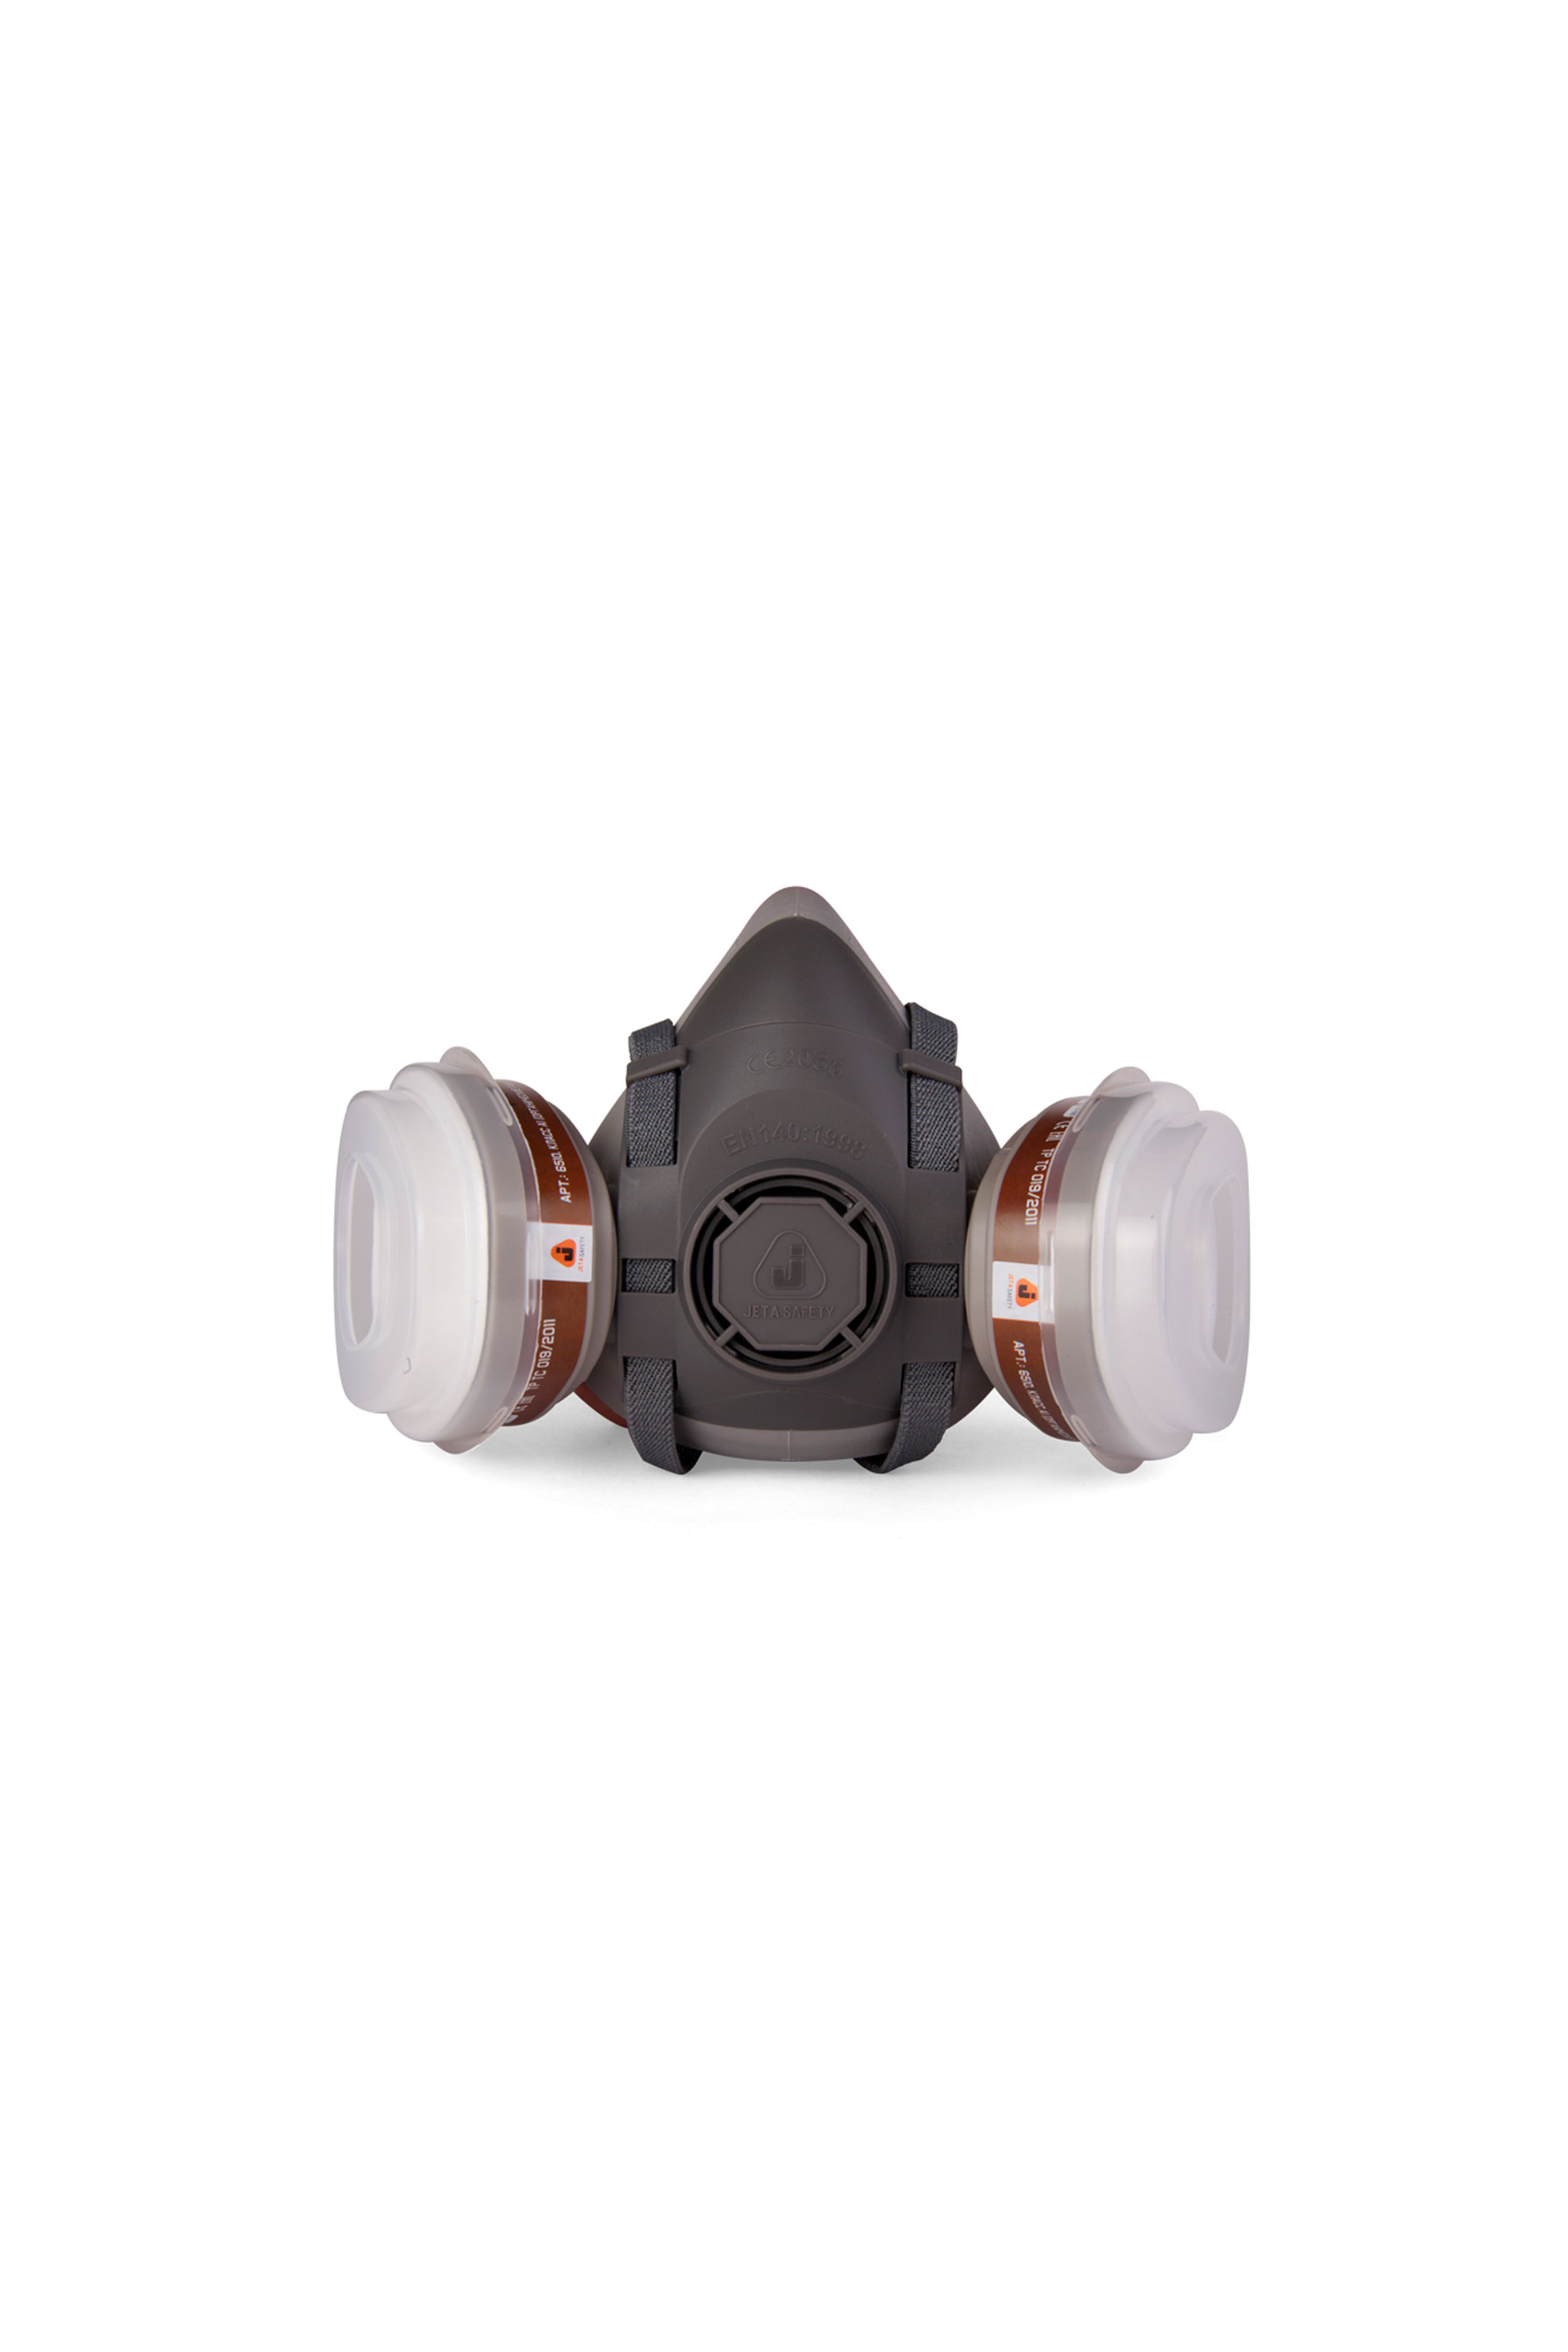 Комплект для защиты дыхания Jeta Safety J-Set 5500p: А1 (2 шт), P2 (4 шт), держатели (2 шт)